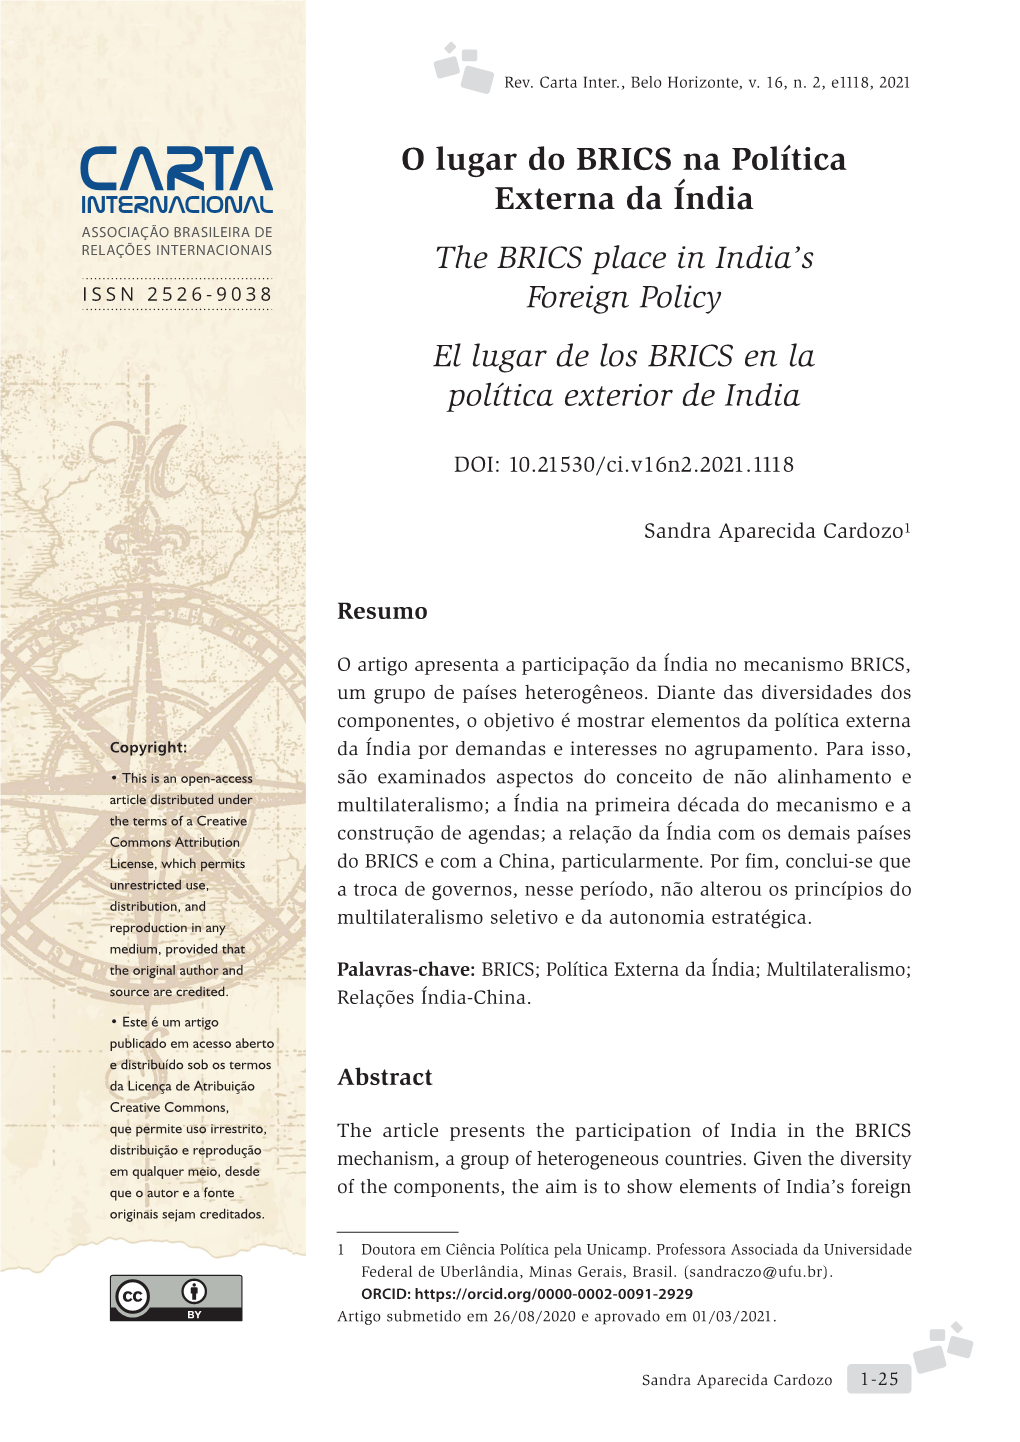 O Lugar Do BRICS Na Política Externa Da Índia